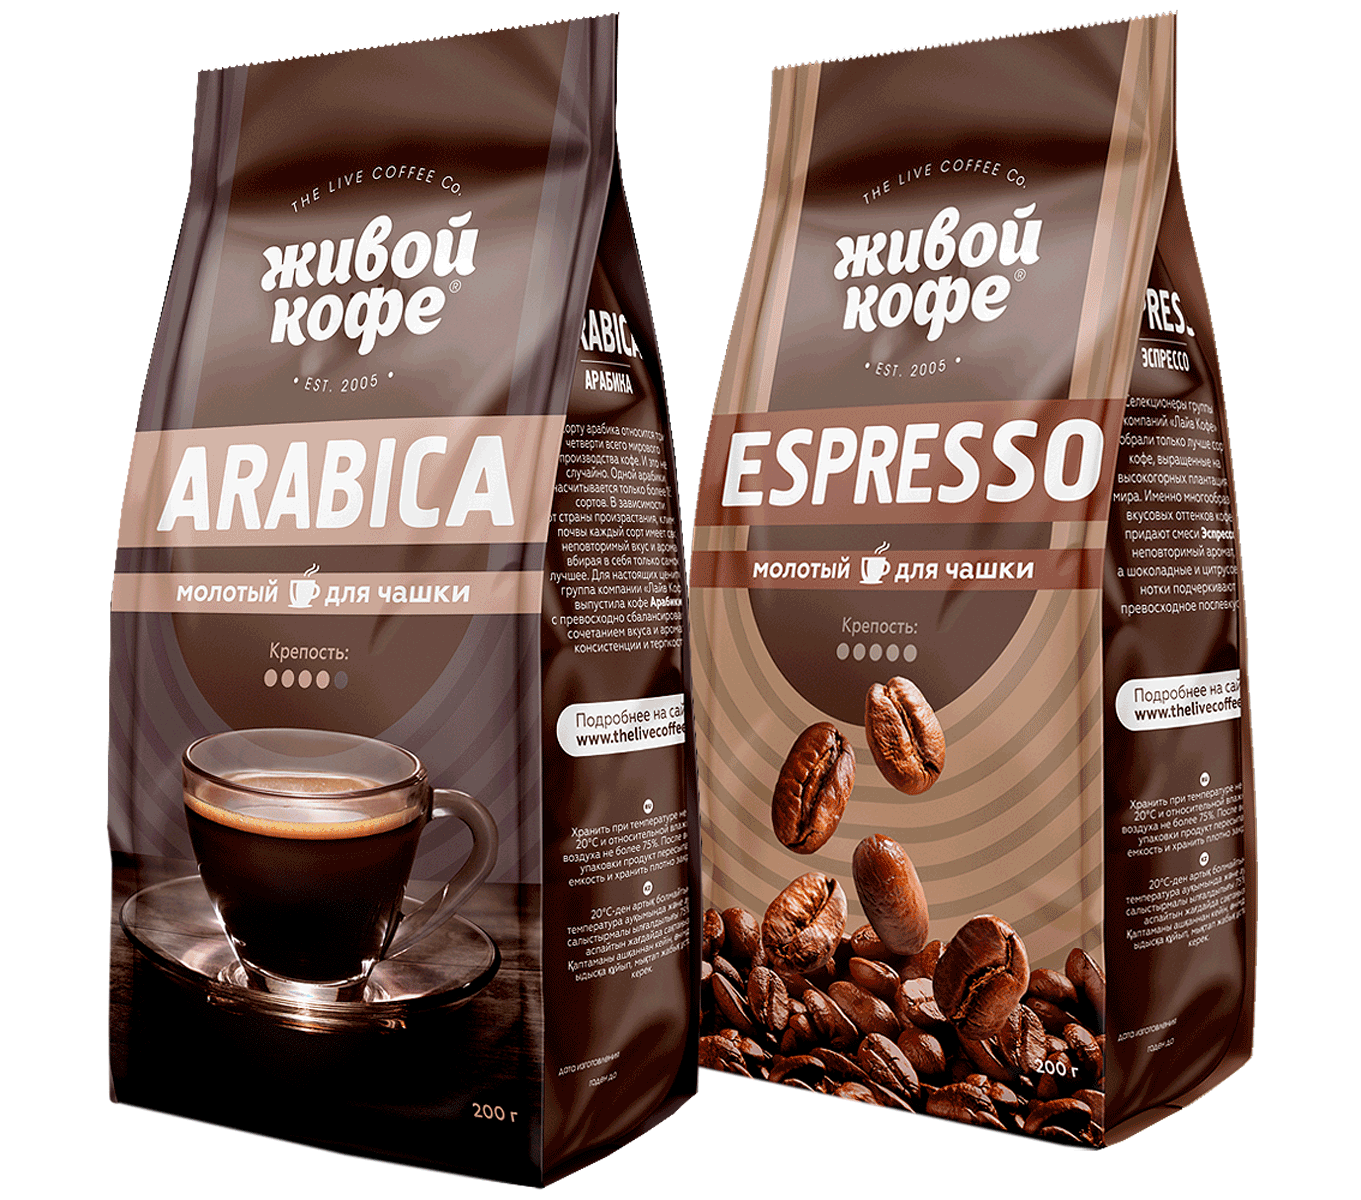 Кофе Арабика эспрессо. Живой кофе Арабика в зернах. Упаковка кофе в зернах. Марки кофе в зернах.